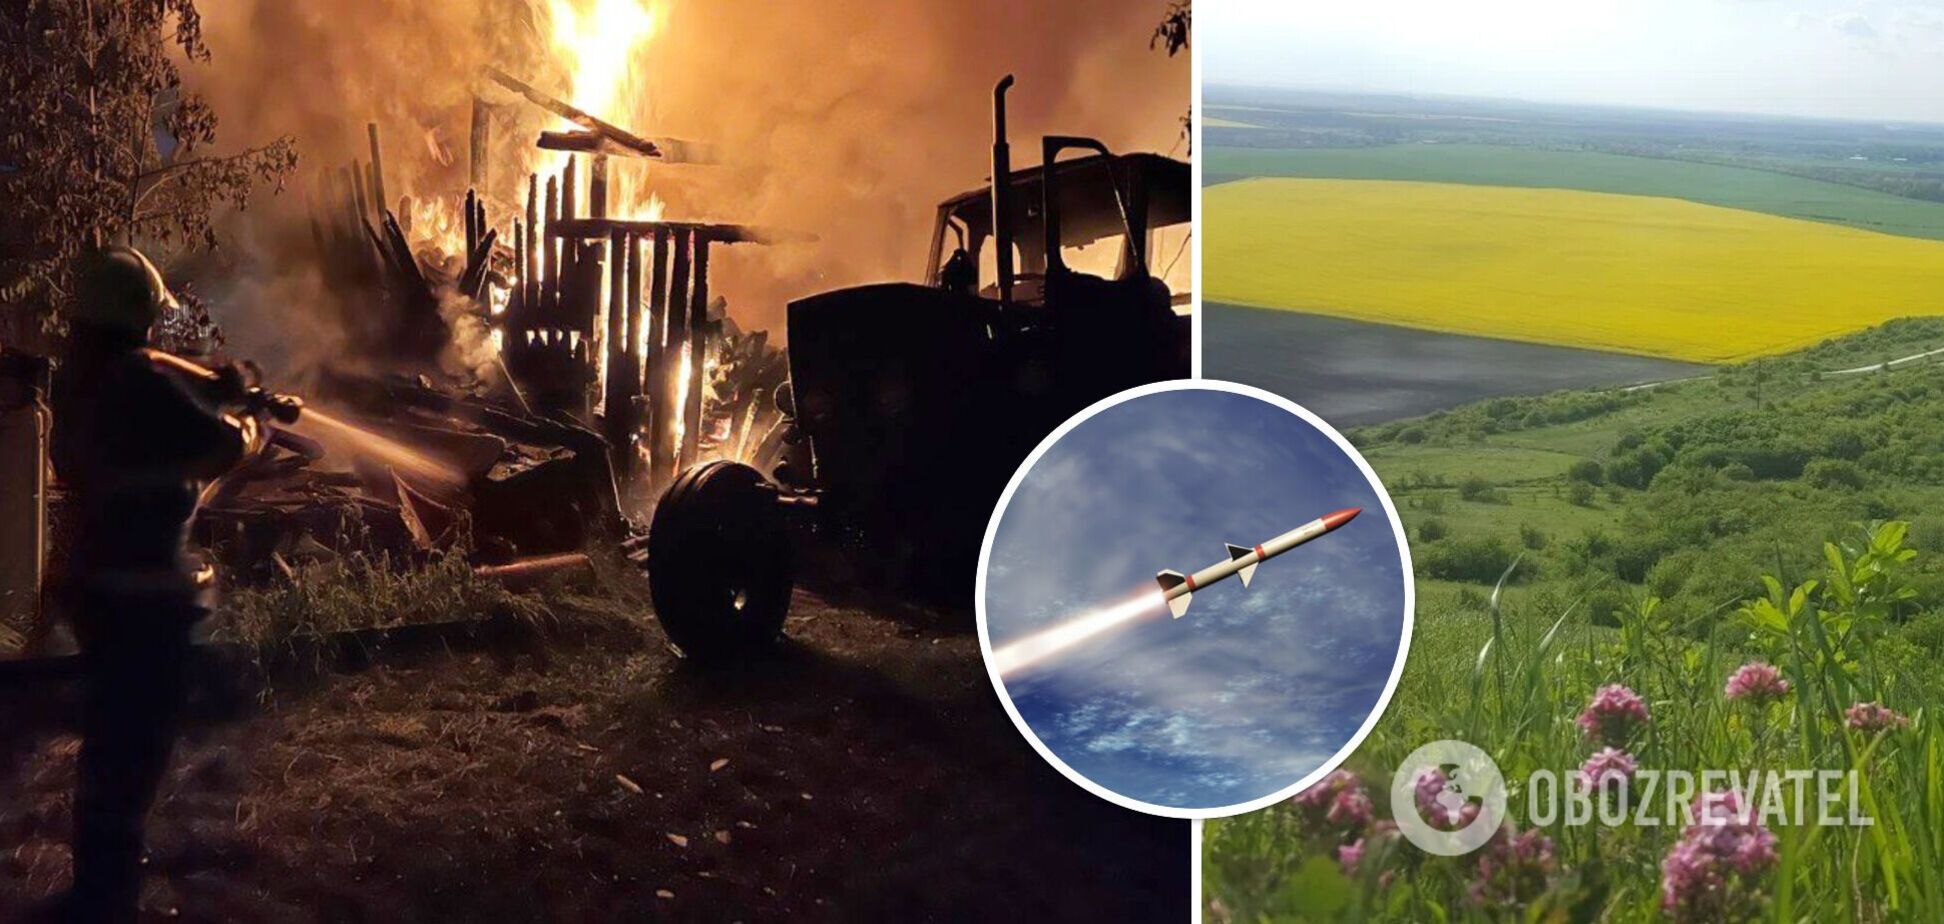 На Львовщине силы ПВО сбили вражескую ракету, из-за падения обломков возник пожар: подробности и фото